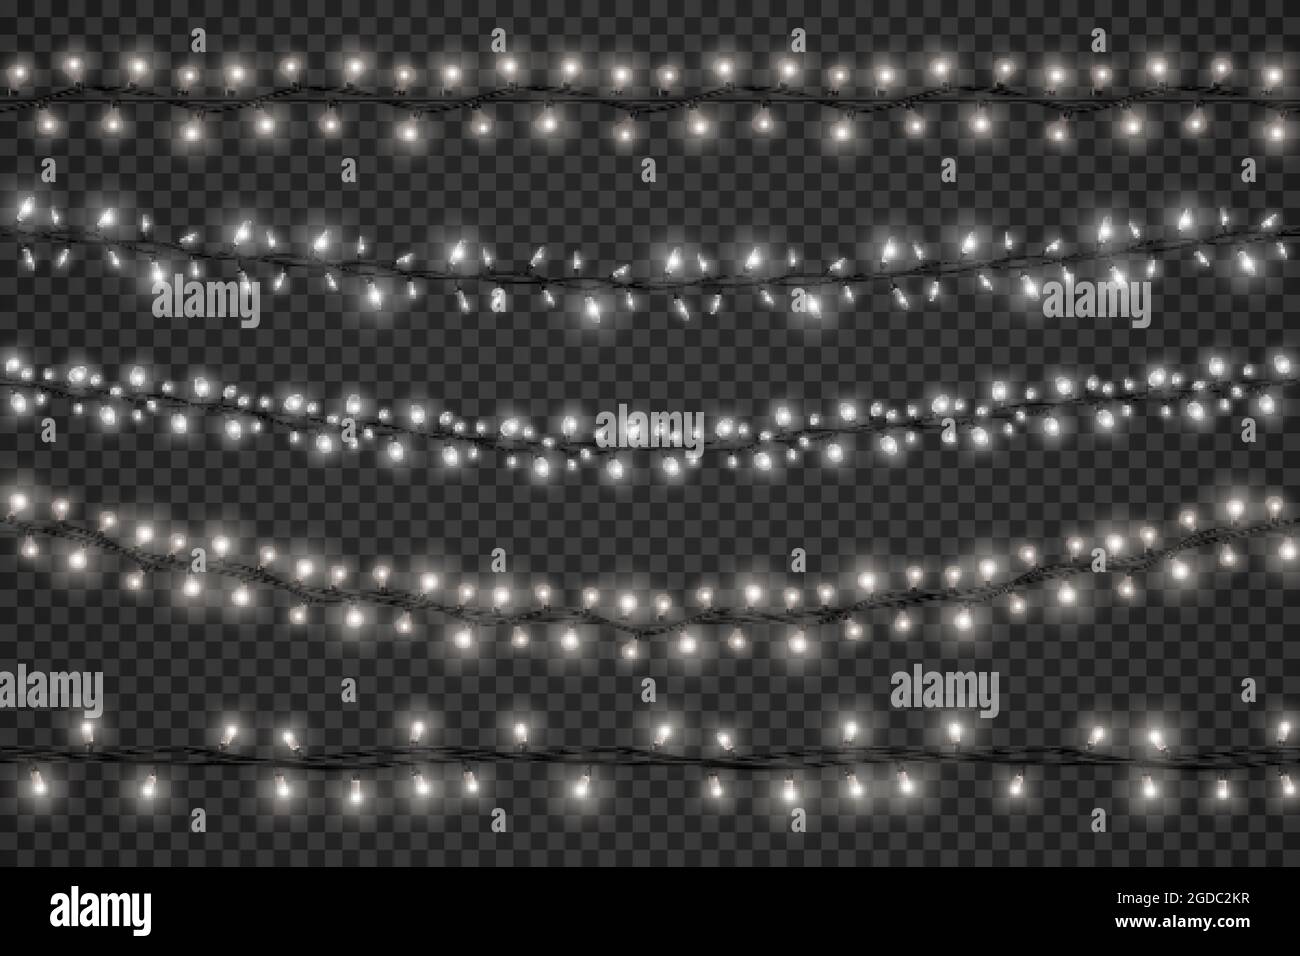 Realistische Lichtergirlanden mit LED-Lampen für festliche weihnachtsdekoration. Weiß glühende Weihnachten oder glückliches neues Jahr String mit Lampen Vektor-Set Stock Vektor